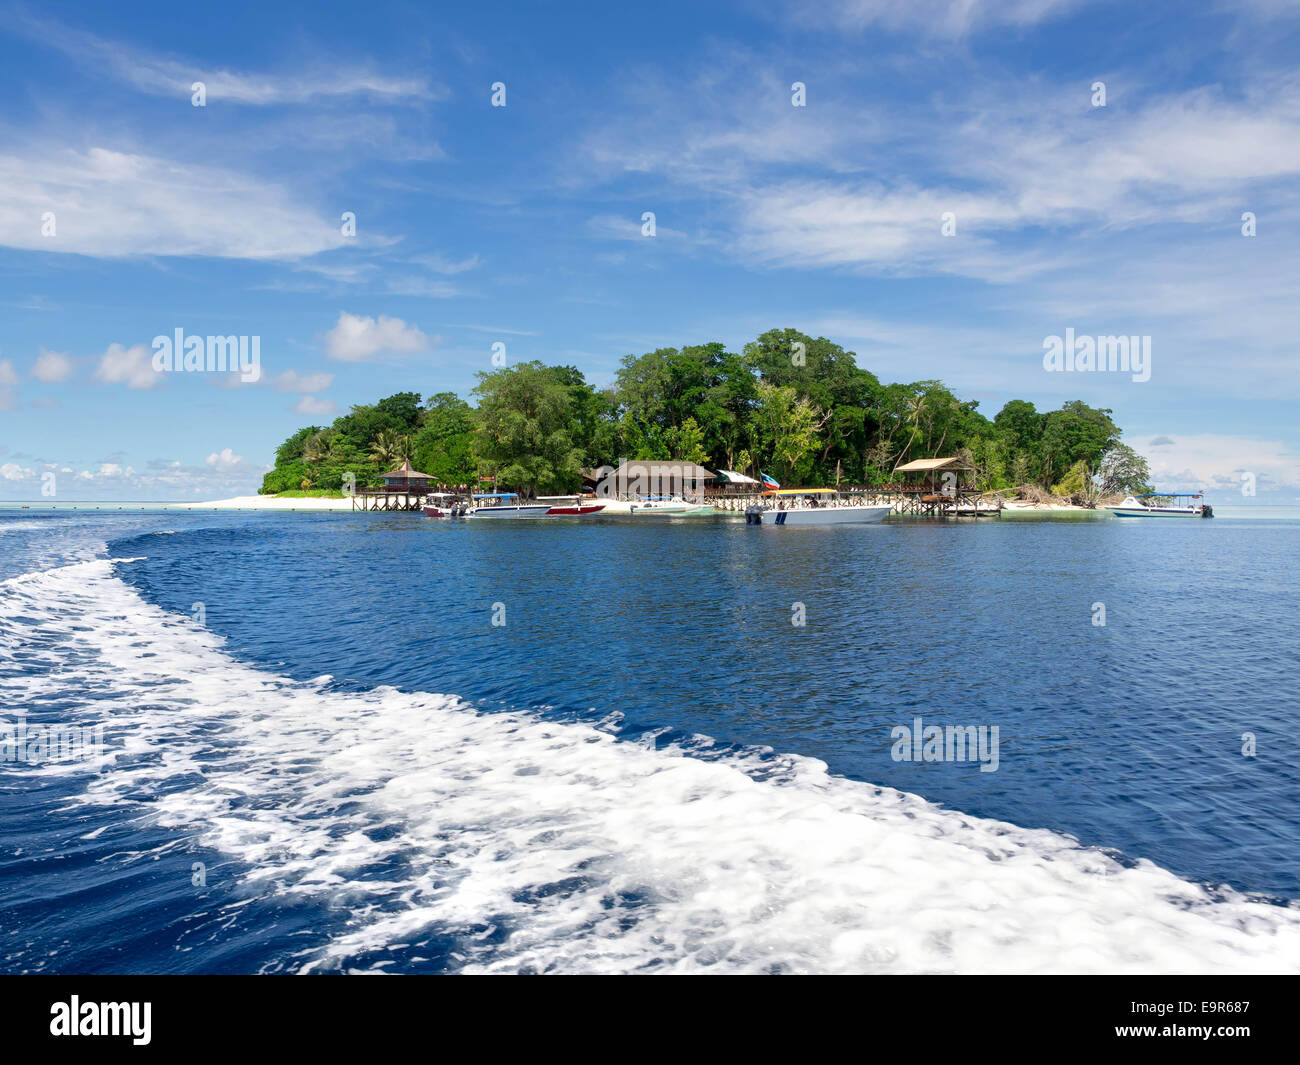 Idyllic Pulau Sipadan island in Sabah, East Malaysia. Stock Photo